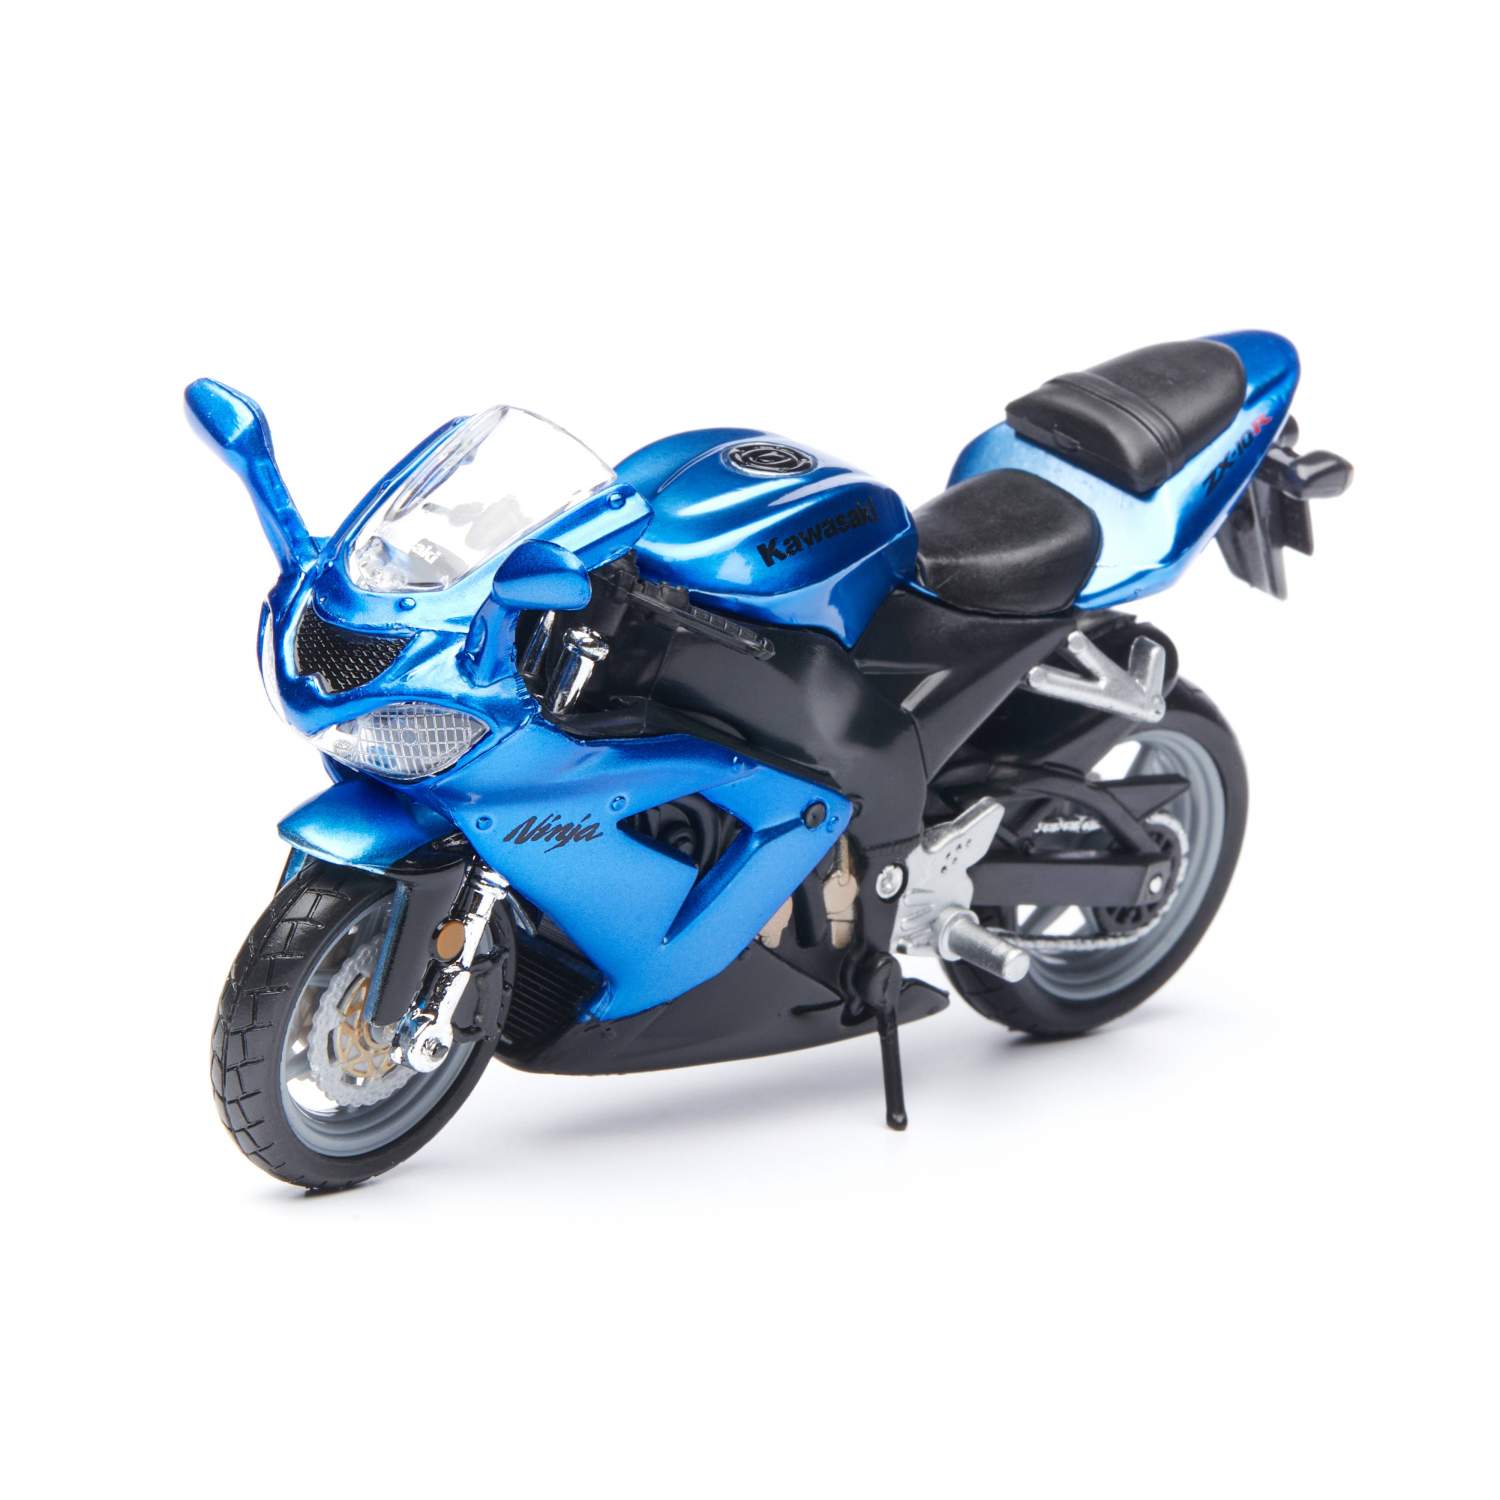 Отзывы о bburago мотоцикл 1:18 CYCLE Kawasaki Ninja ZX-10R, голубой  18-51030/18-51000/11 - отзывы покупателей на Мегамаркет | игрушечный  транспорт 18-51030/18-51000/11 - 100029226016